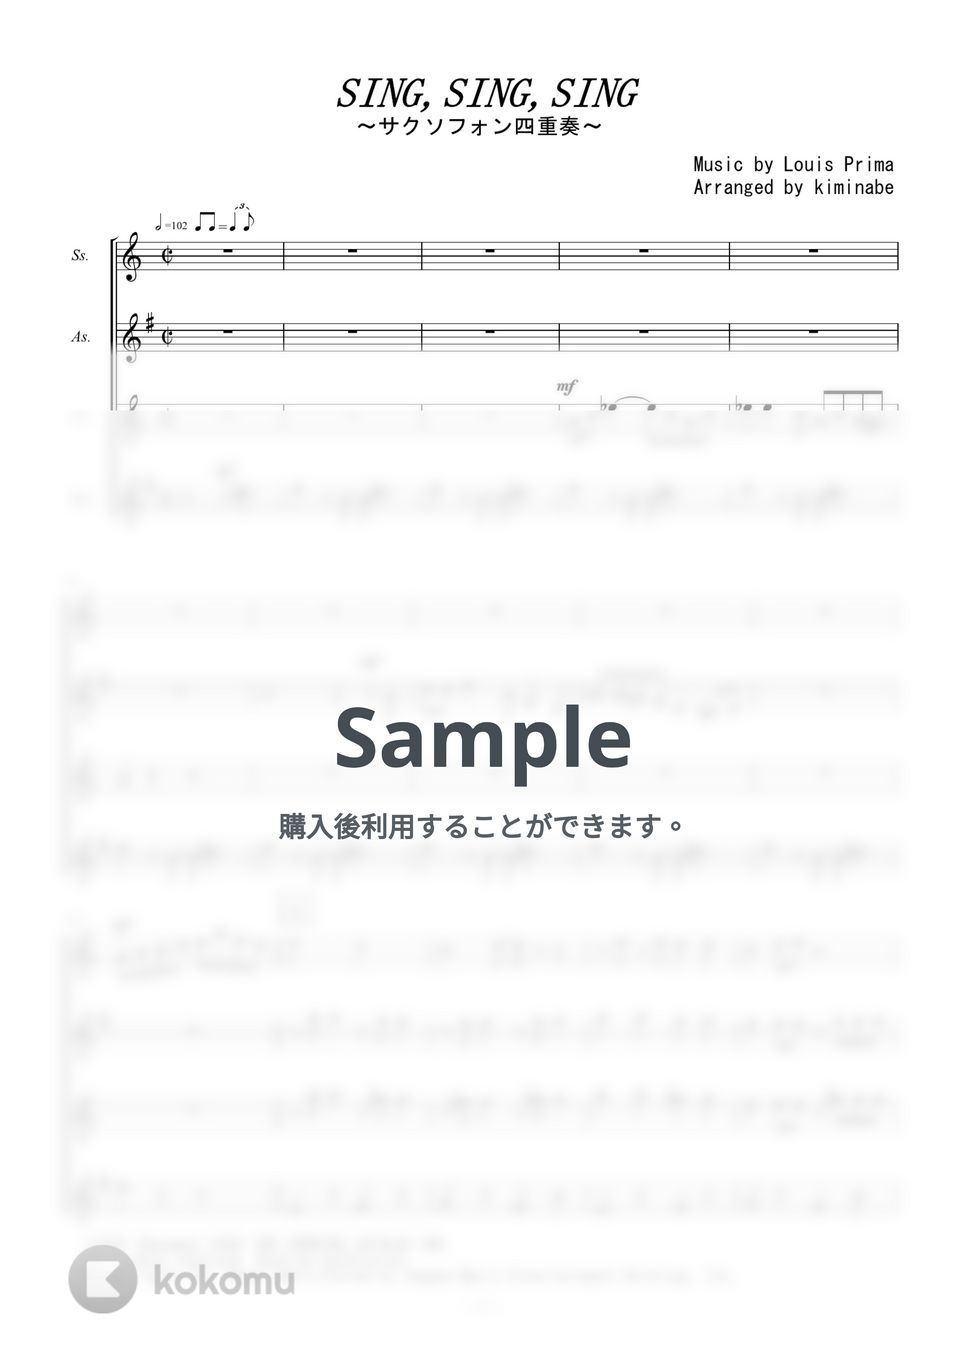 ベニーグッドマン - Sing,Sing,Sing (サクソフォン四重奏) by kiminabe